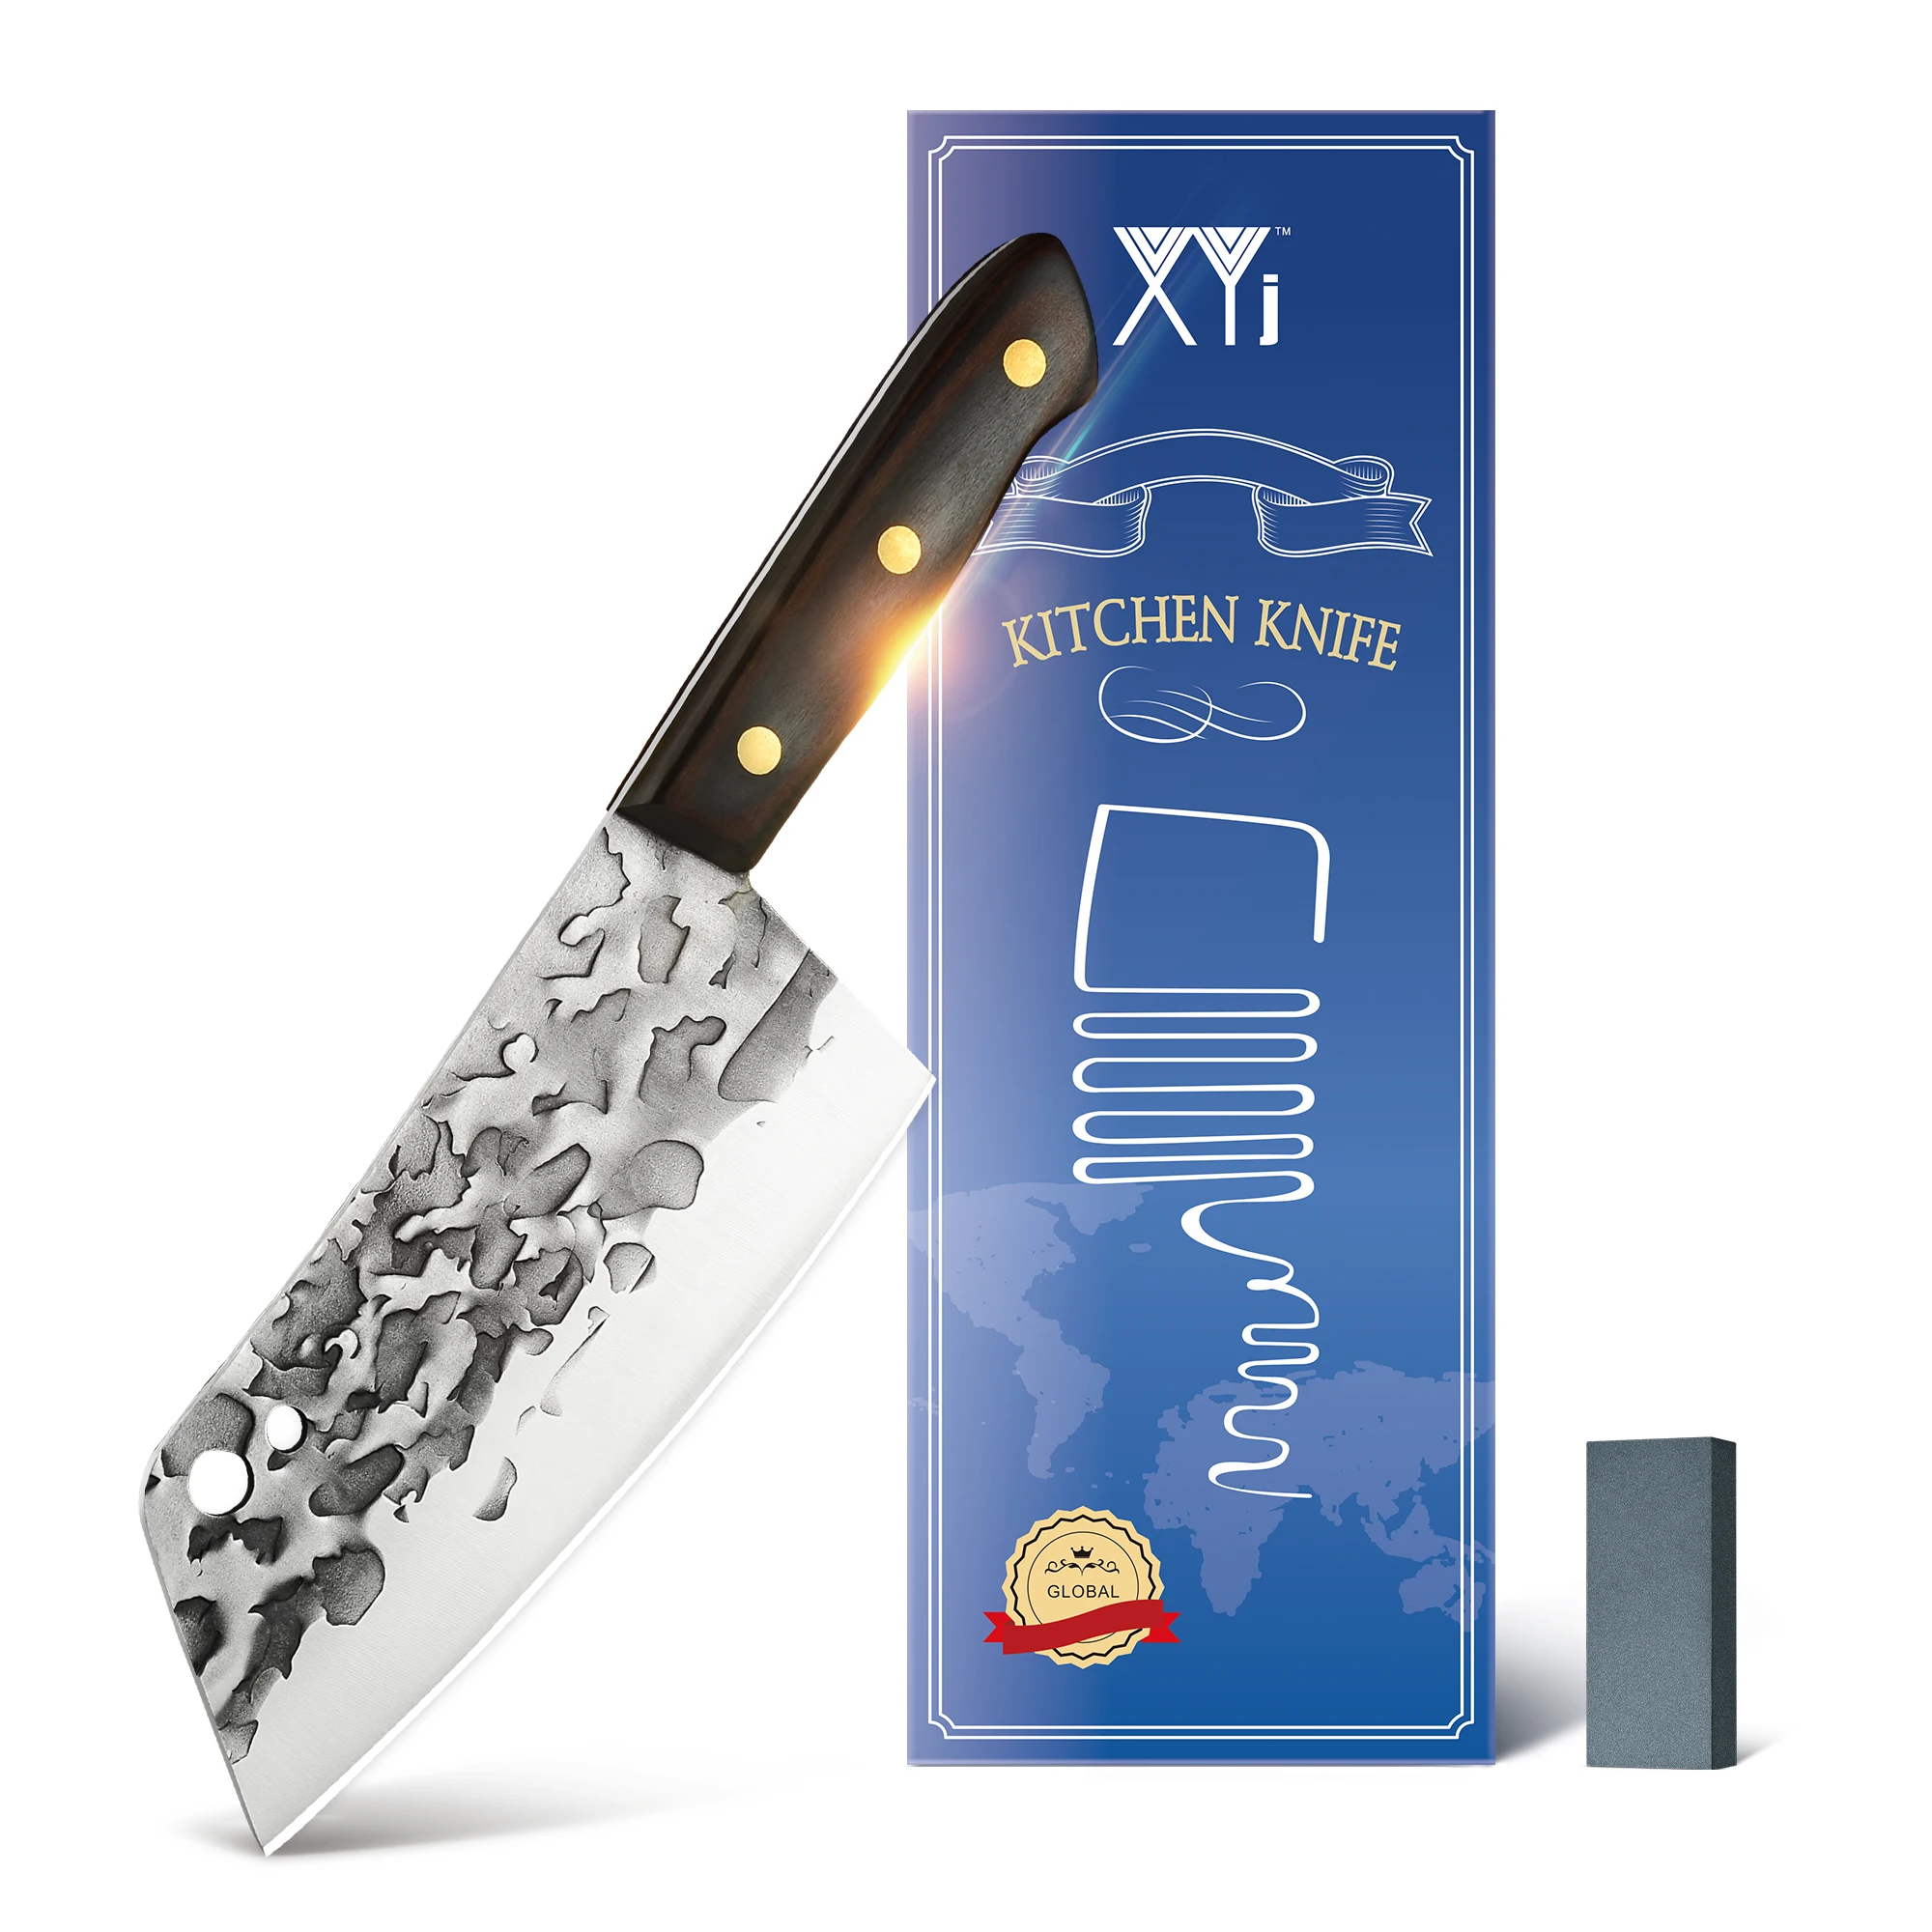 

Китайский кухонный нож XYJ Full Tang, лампа для резки овощей, мяса, фруктов, чеснока, широкое лезвие, измельчитель, ножи в подарочной коробке